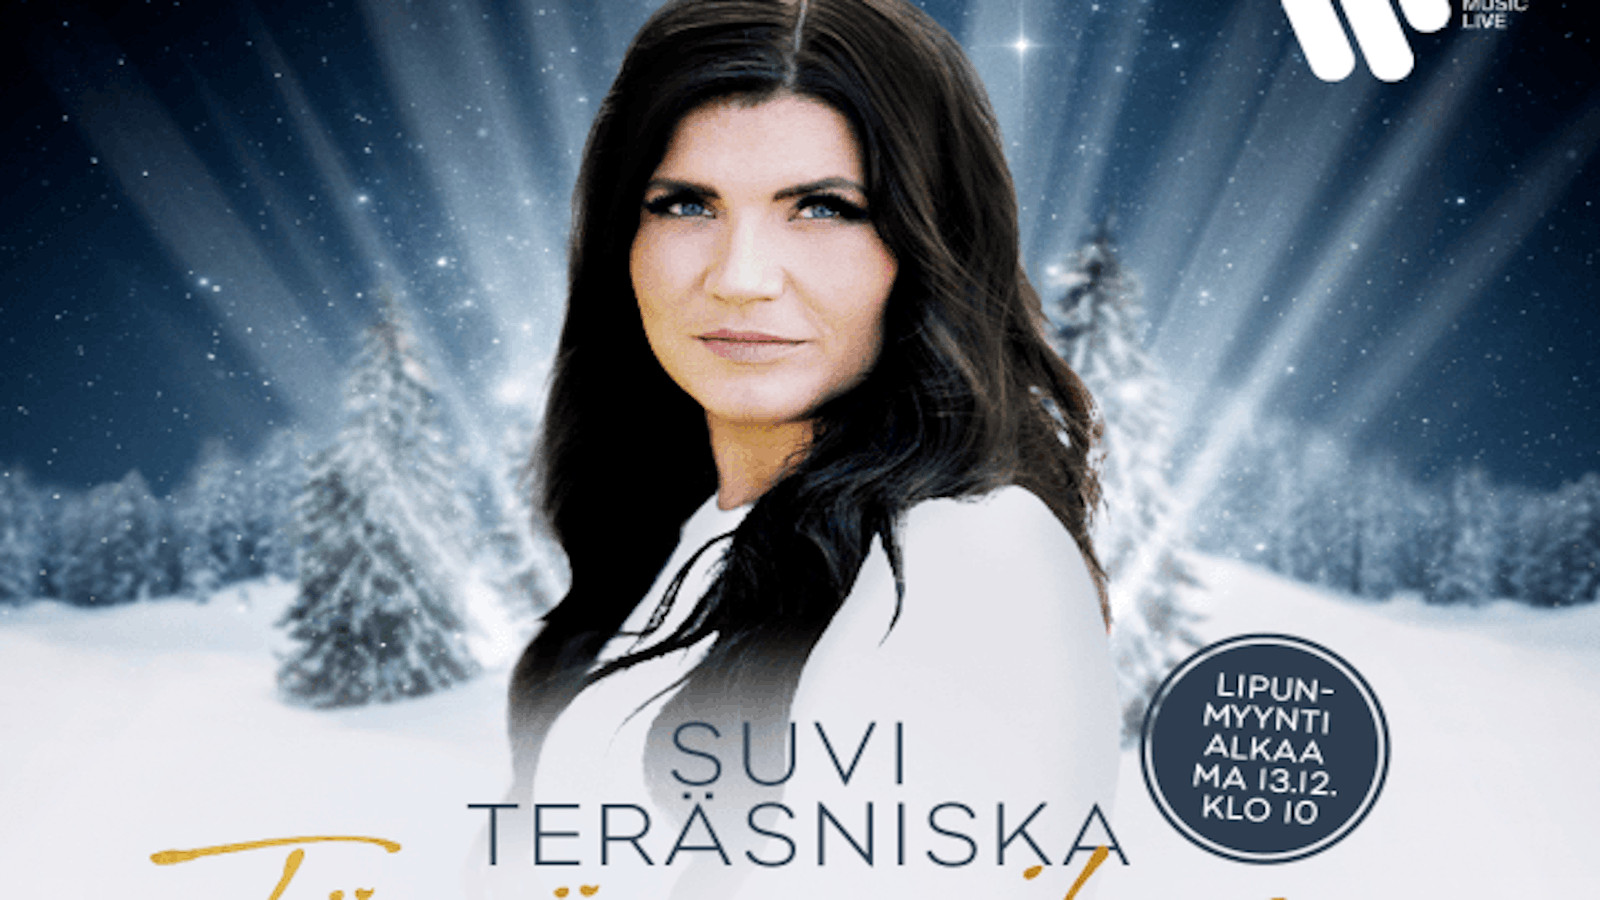 Suvi Teräsniskan joulukonsertti Tämä maailma tarvitsee joulun on Tampereen Nokia Arenalla 17.12.2022.